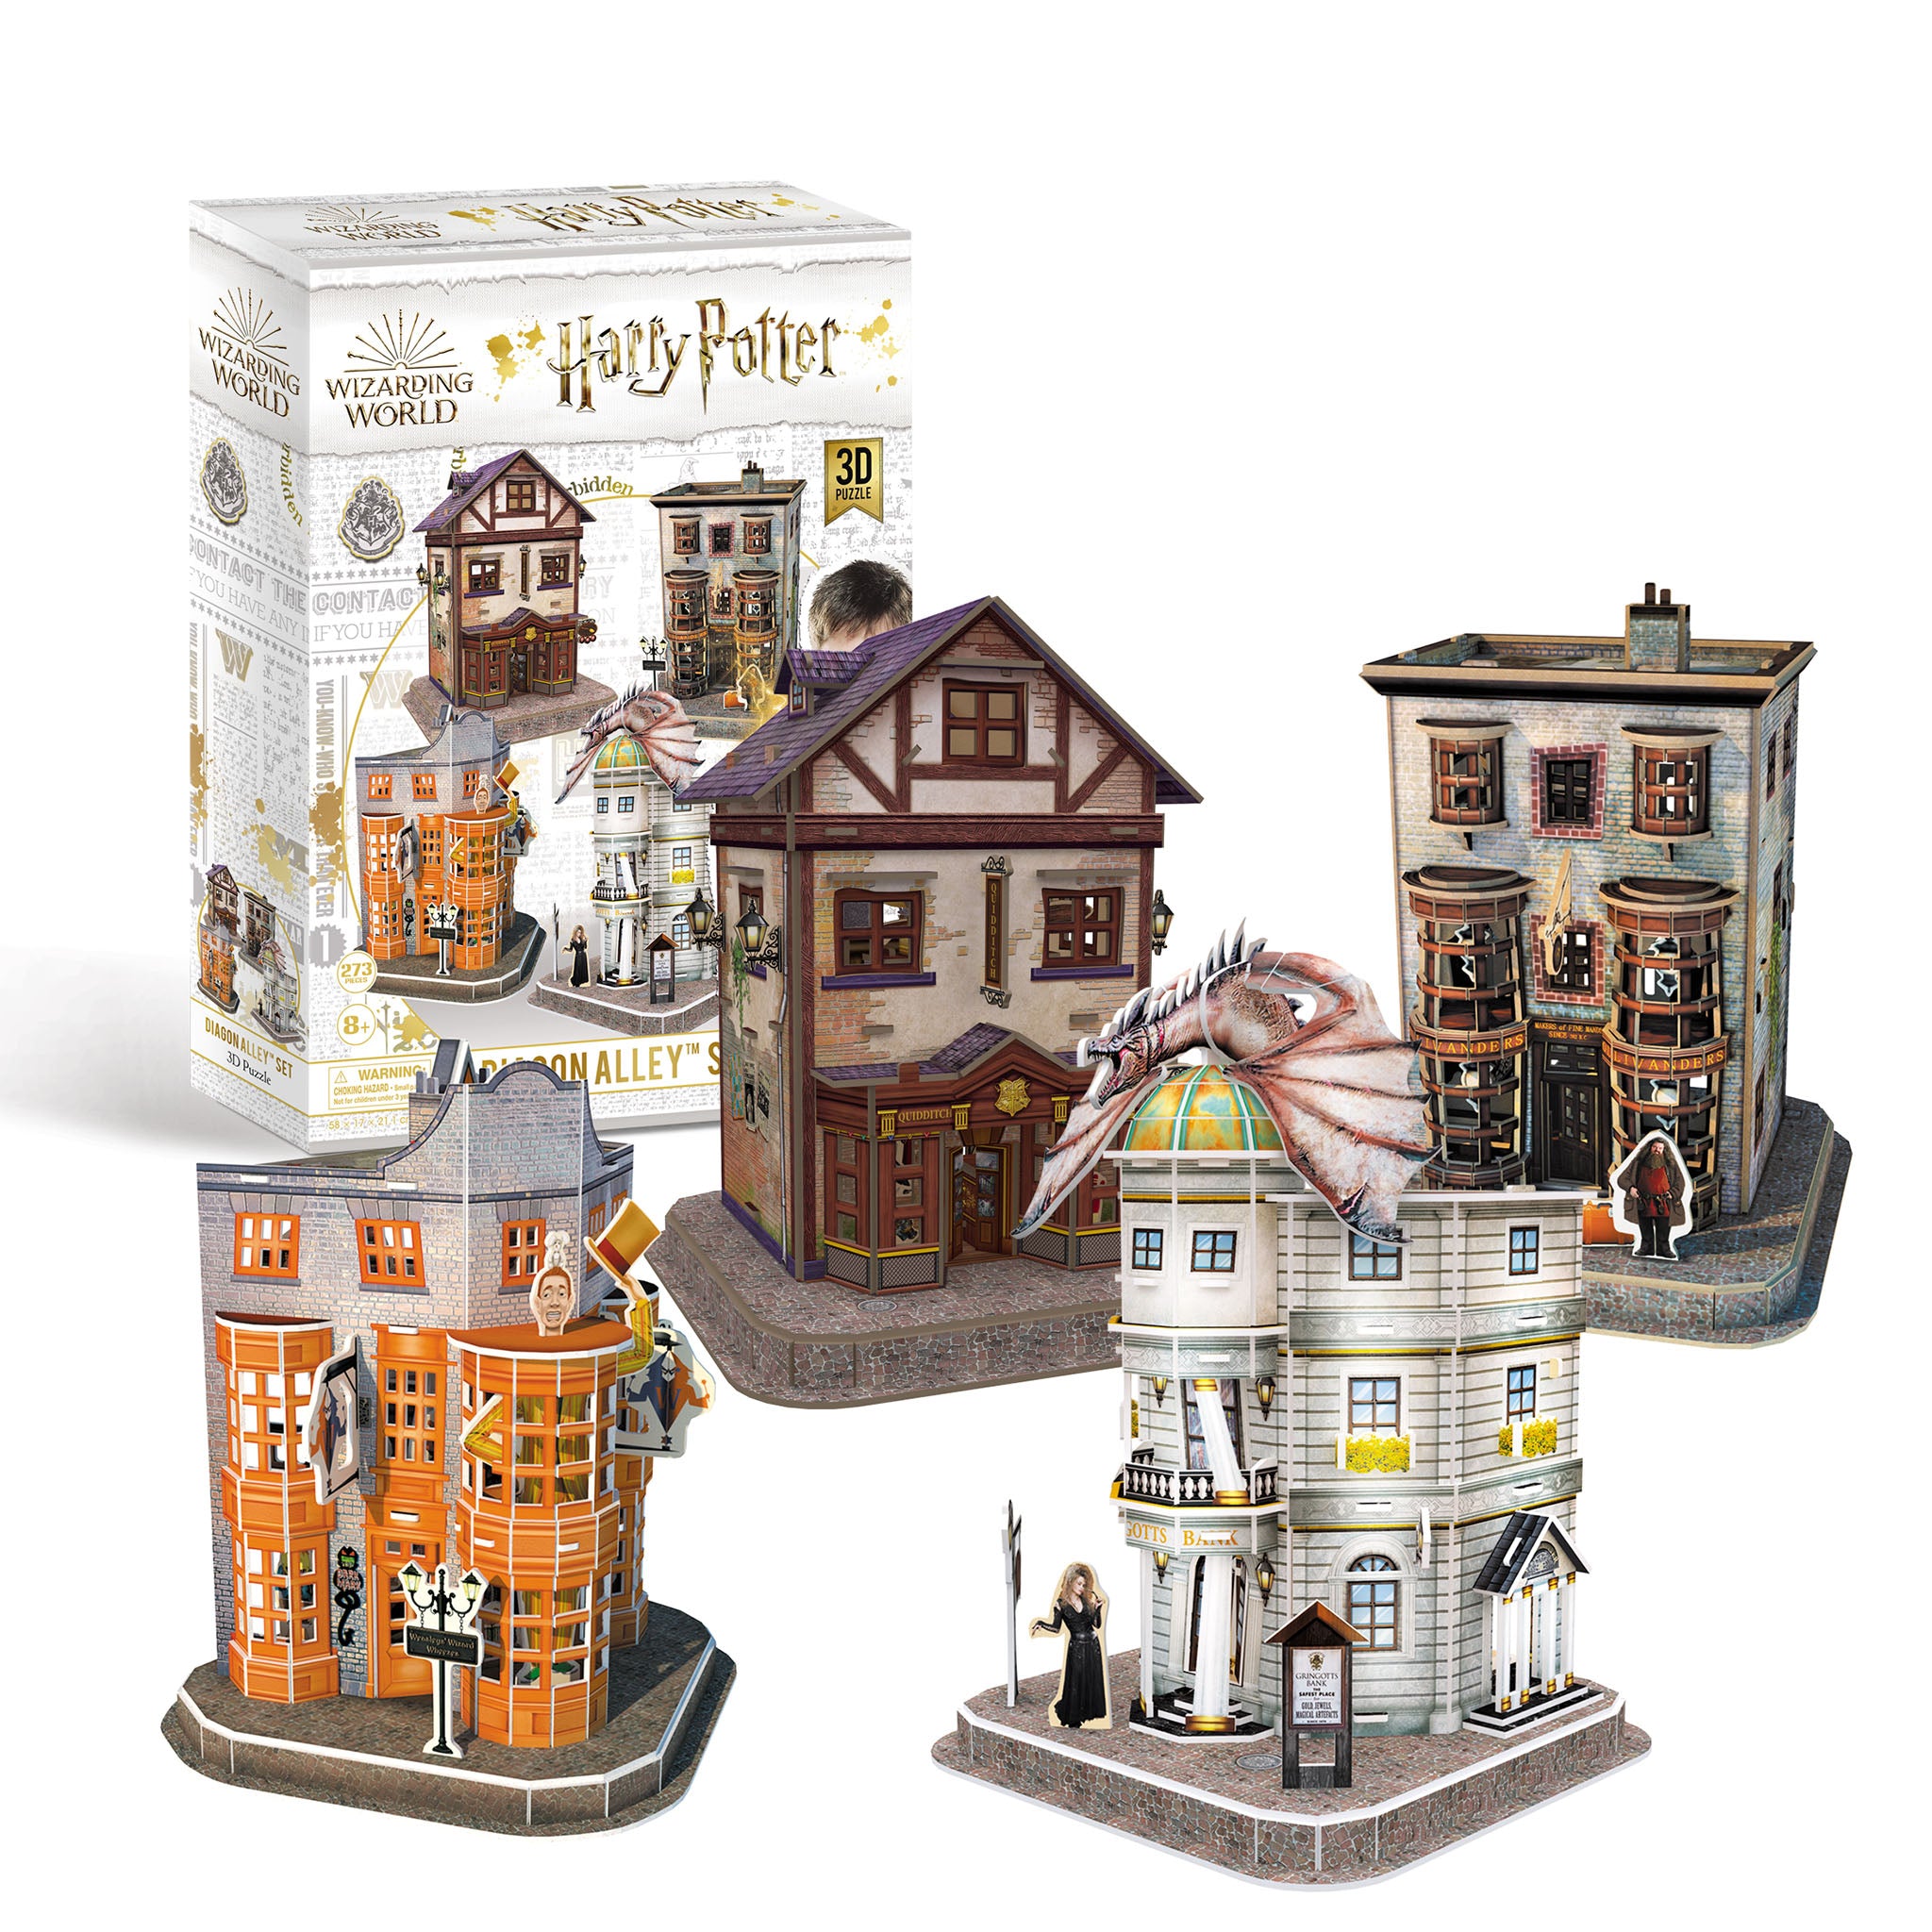 Puzzle - 3D Harry Potter - Diagon Alley Set 272 Teile